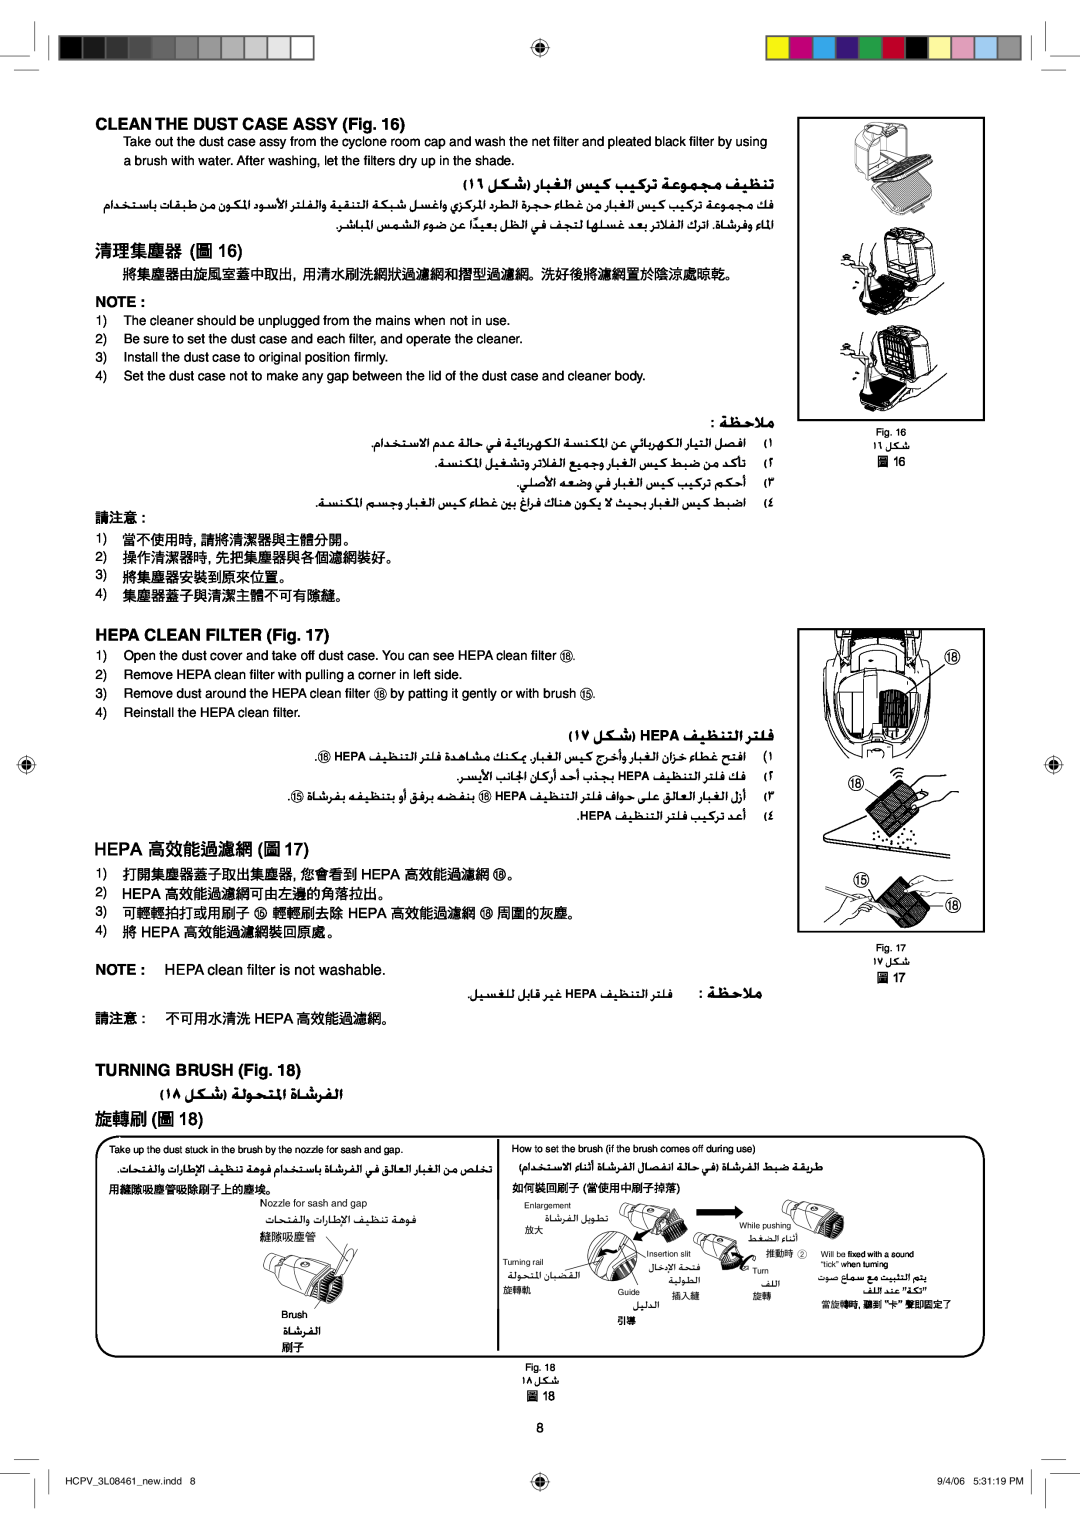 Hitachi CV-SJ21V manual Ȉȍ ǚƳŵȤƾƃưŽȚǏƸż ƿƸżǍůǀŸǞƵƆžǗƸƮƶů,  ǀƮŲǾž, ȈȎǚƳŵ 7B3 ǗƸƮƶƄŽȚ ǍƄƴź, Ȉȏ ǚƳŵ ǀŽǞƇƄƓȚ ȜƾŵǍƱŽȚ 